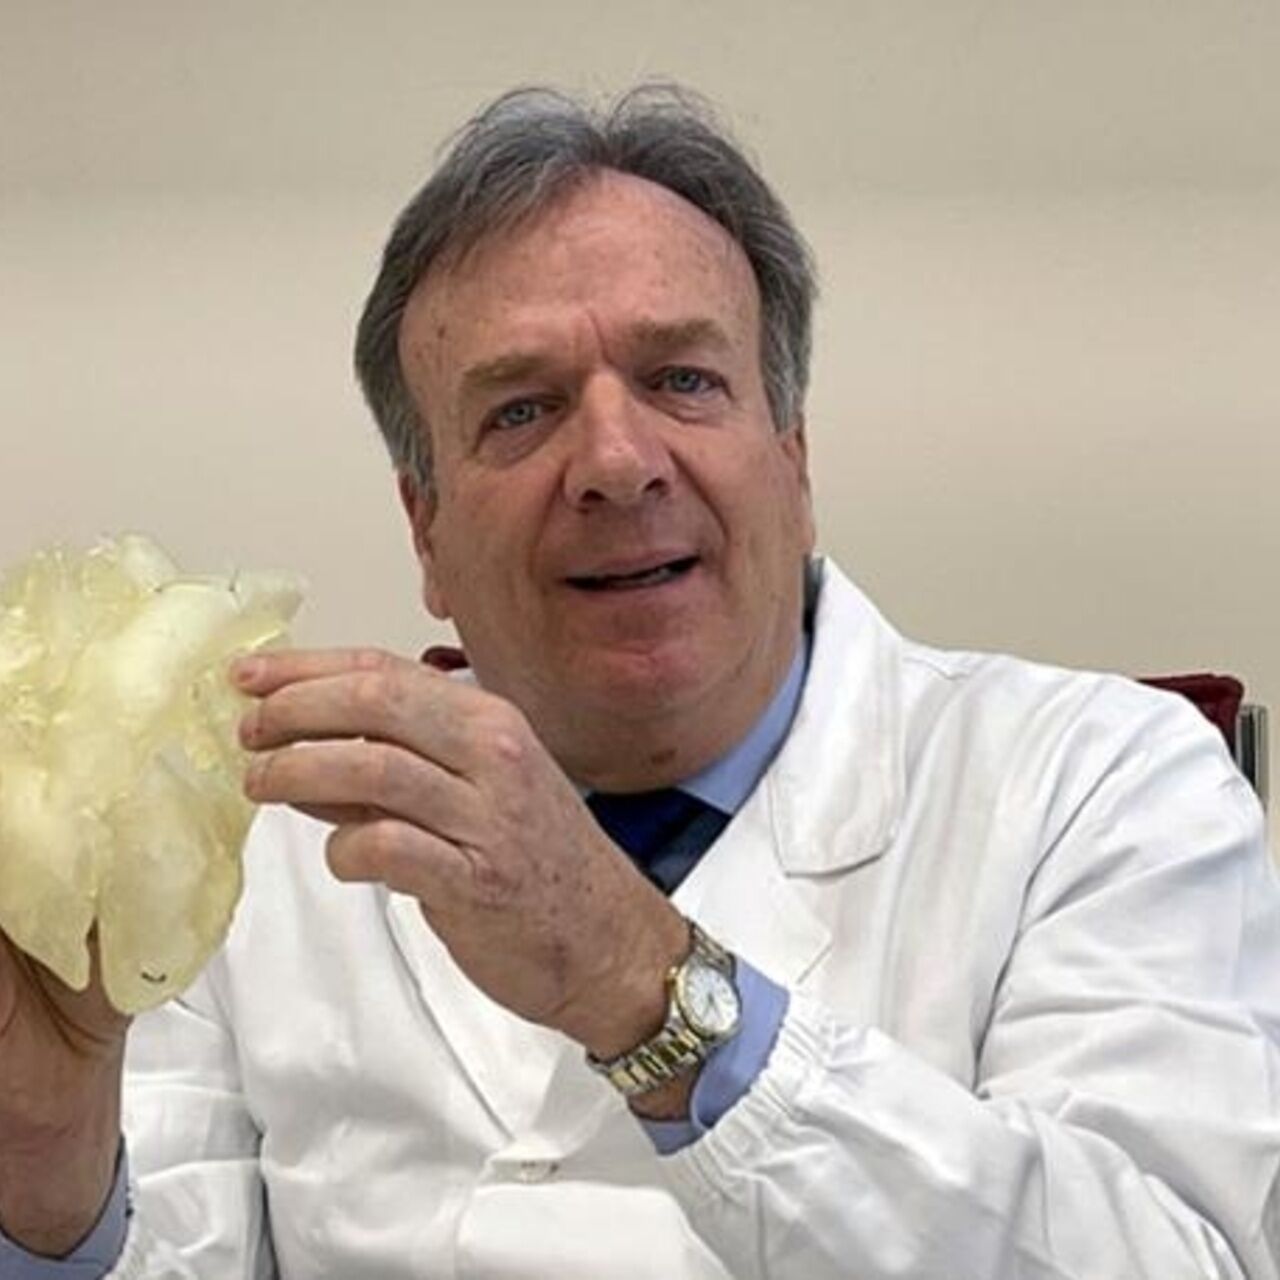 Gino Gerosa: 이탈리아 최초의 인공 심장을 만들기 위해 50천만 유로의 예산으로 의사, 엔지니어, 생물학자 및 재료 전문가를 조율할 파도바 대학의 외과 의사와의 인터뷰